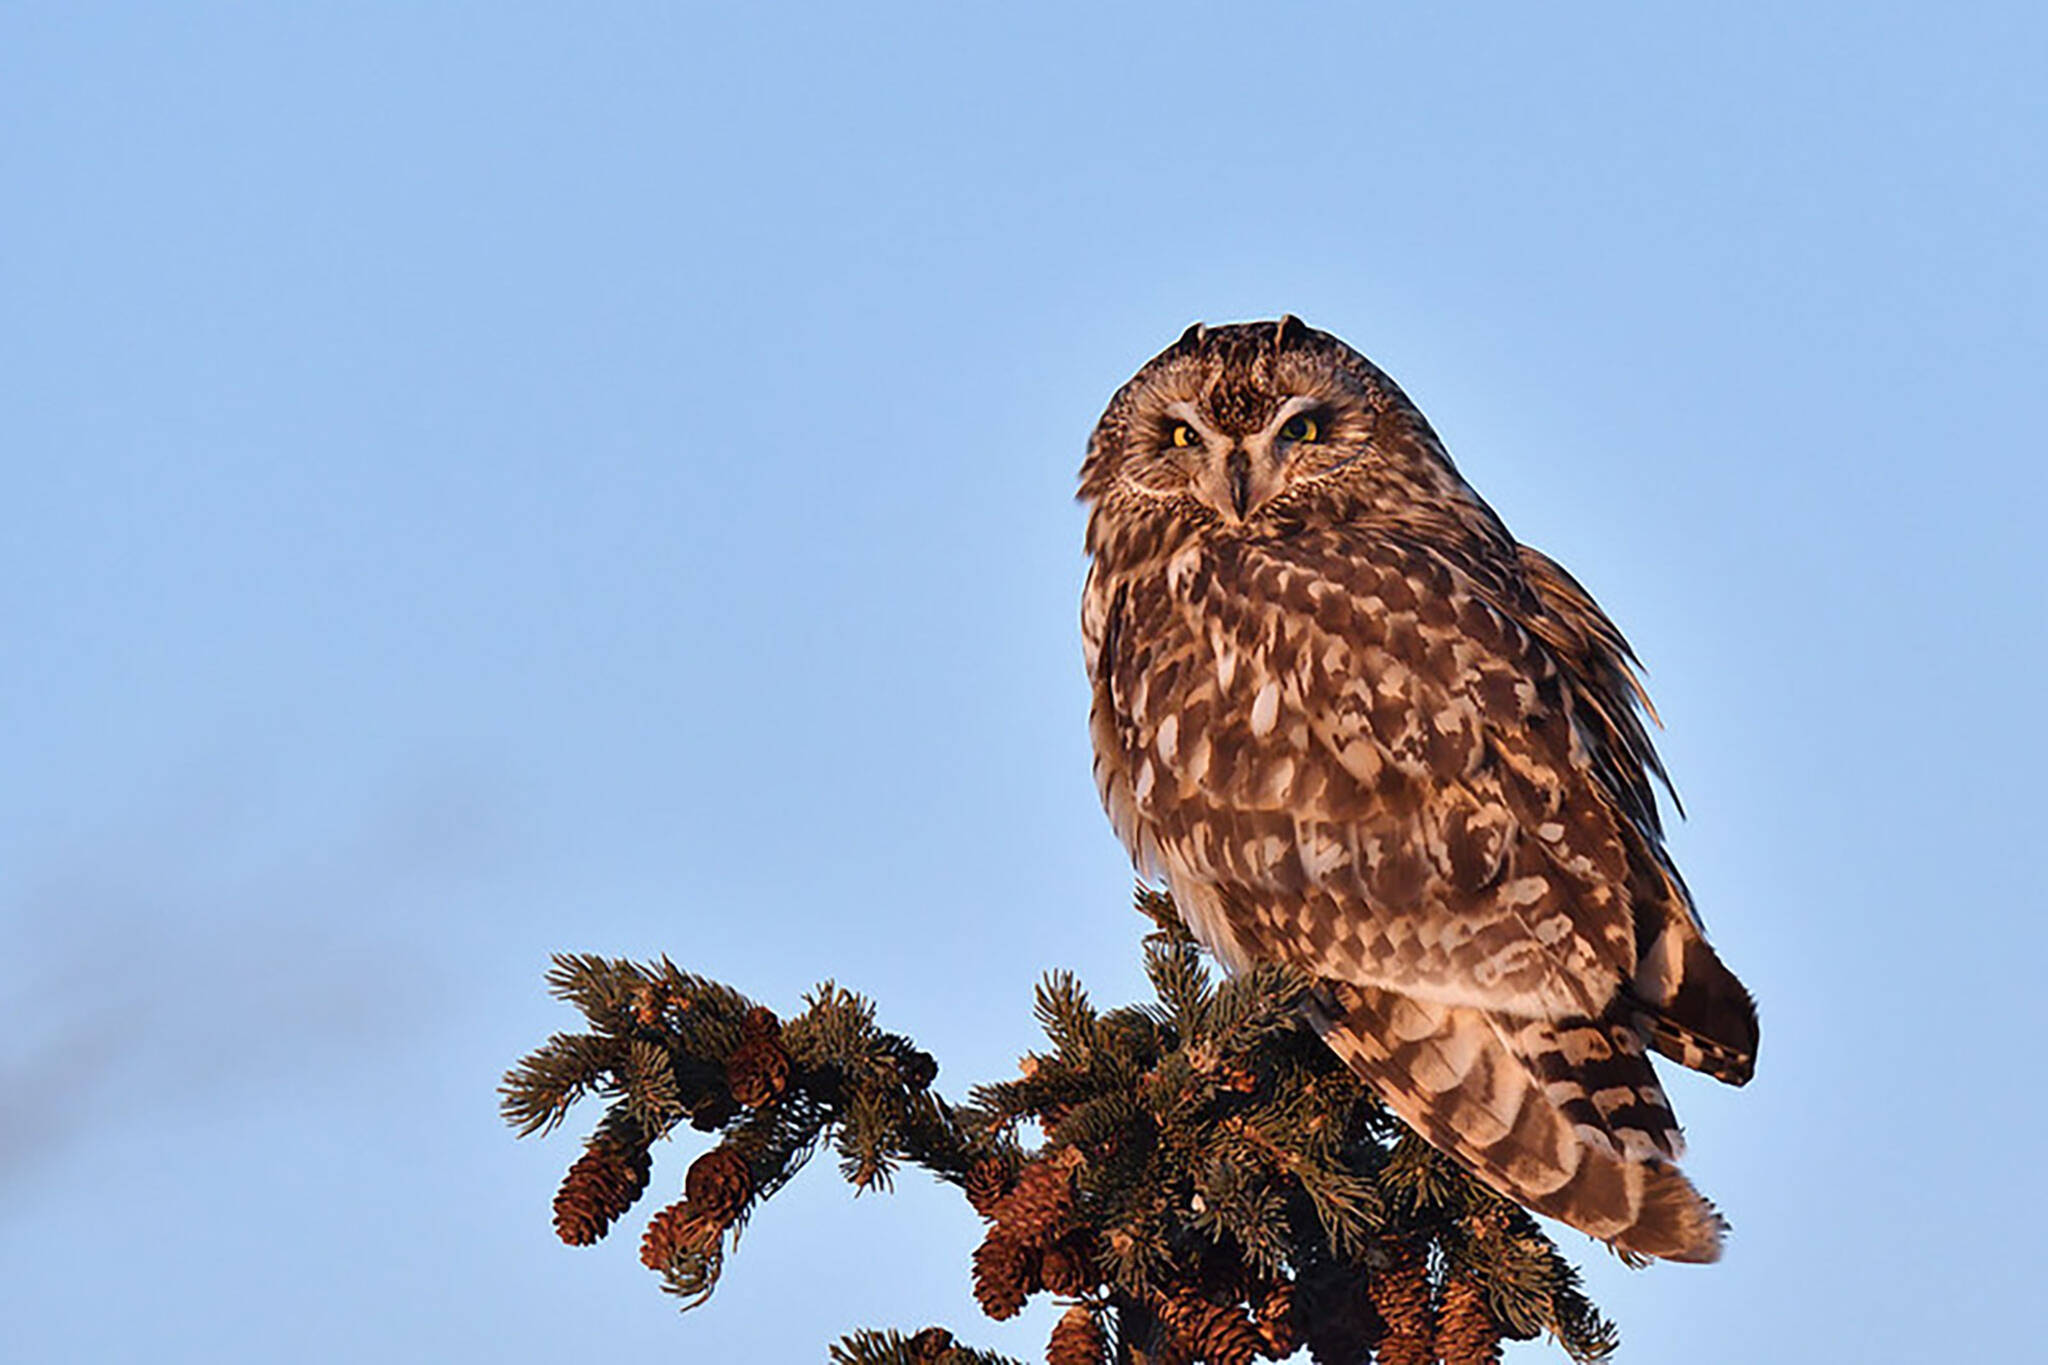 toronto park owls